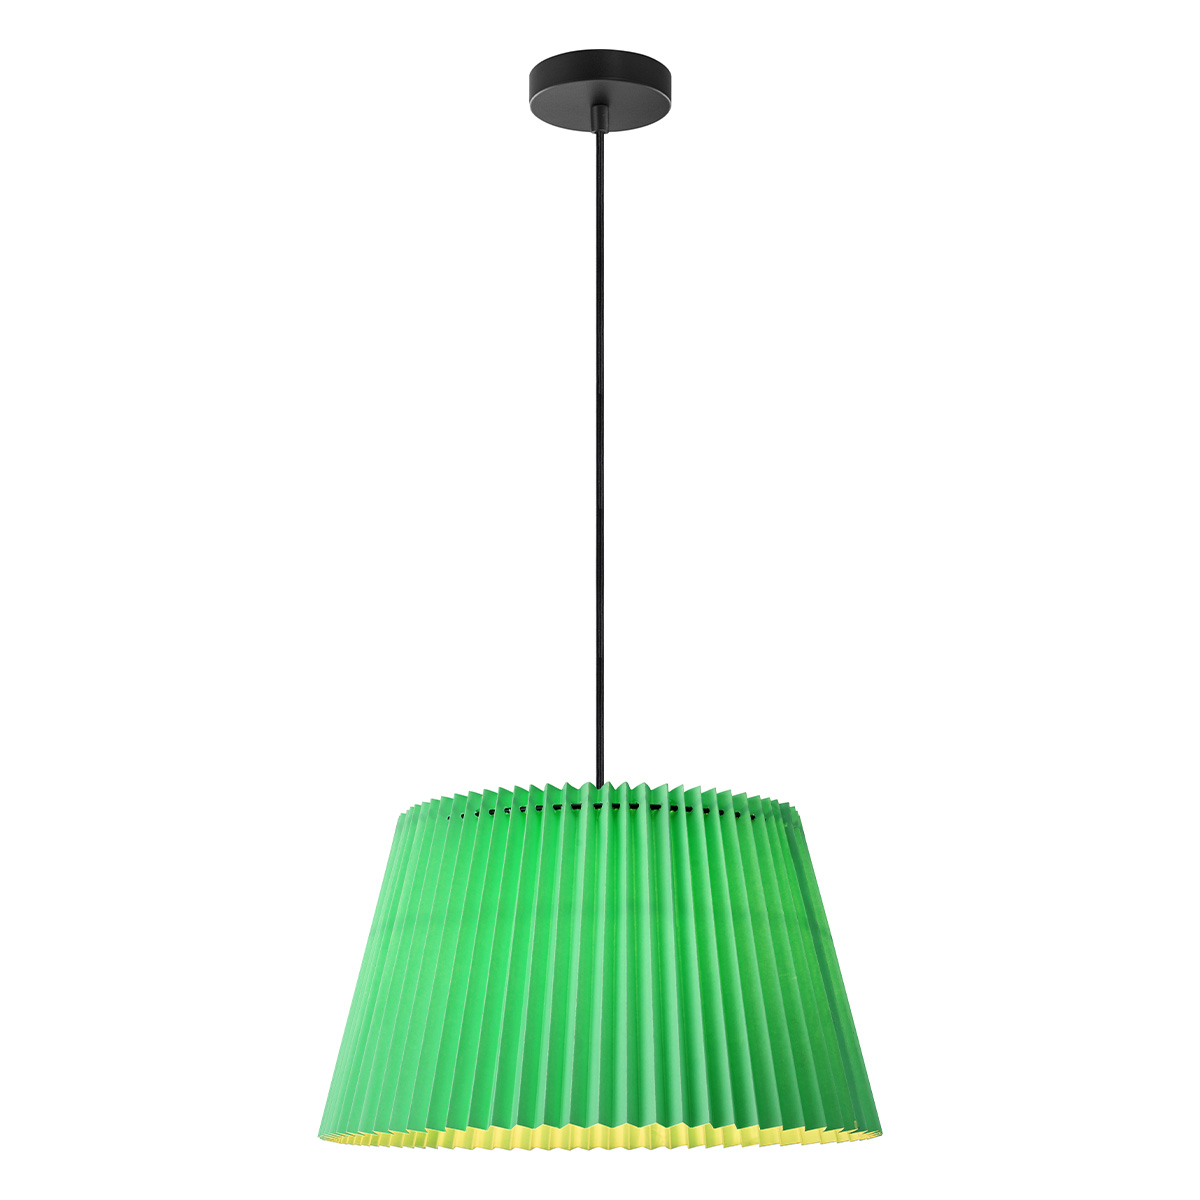 Tangla Lighting - LED Pendant lamp 1 Light - metal + paper -  green - pleat - E27